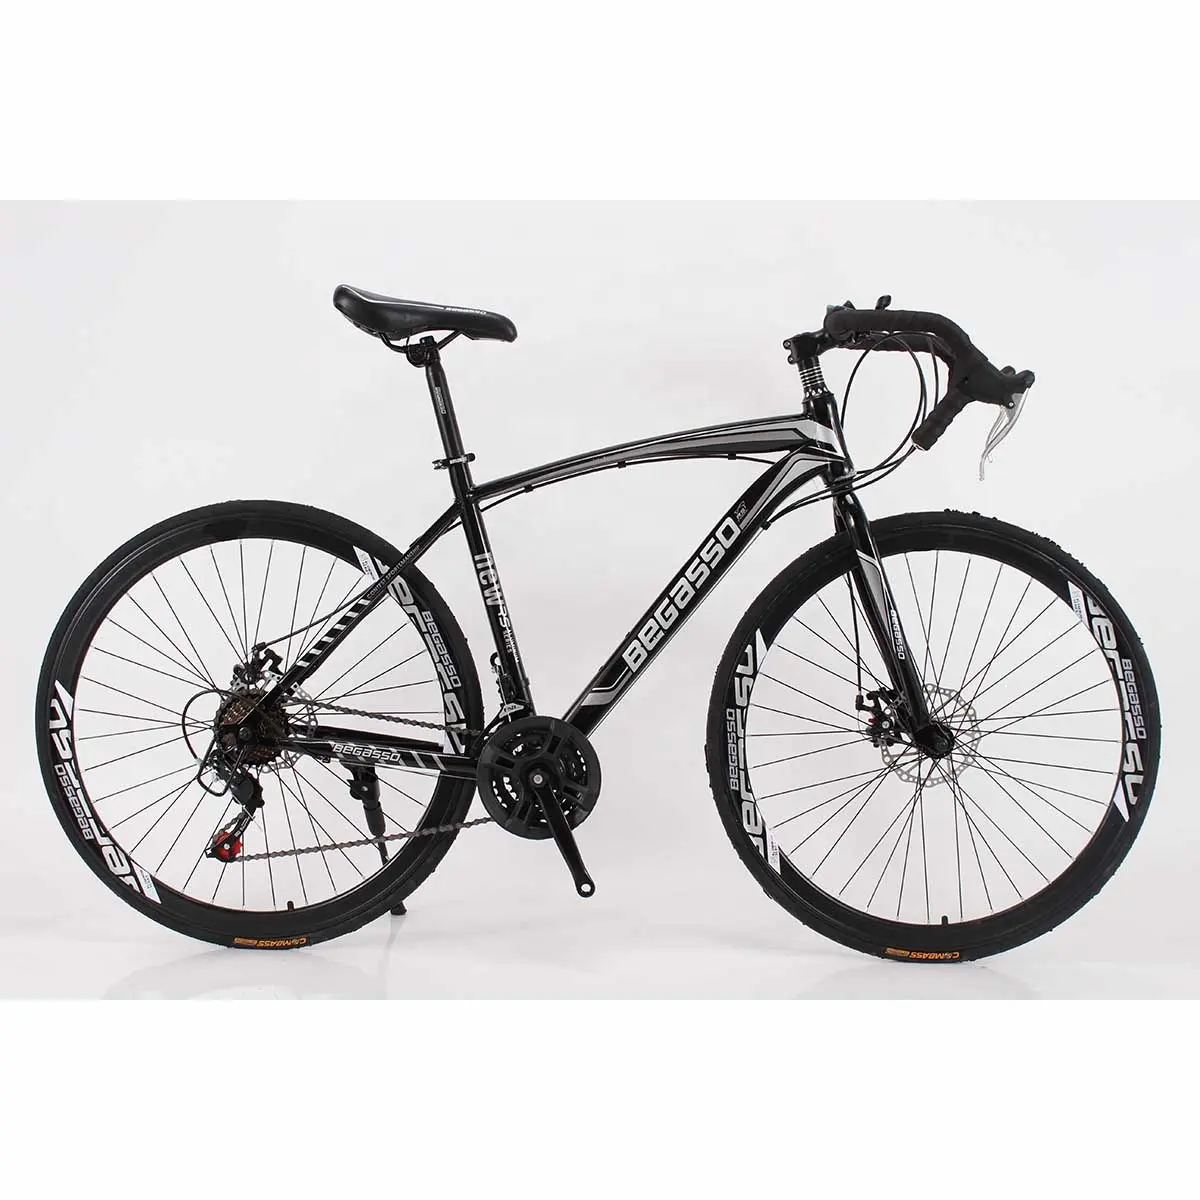 Alta qualità 21 velocità 700C Bicicleta De Monta Aadult biciclette fornitori/bici da strada Carbon Racing